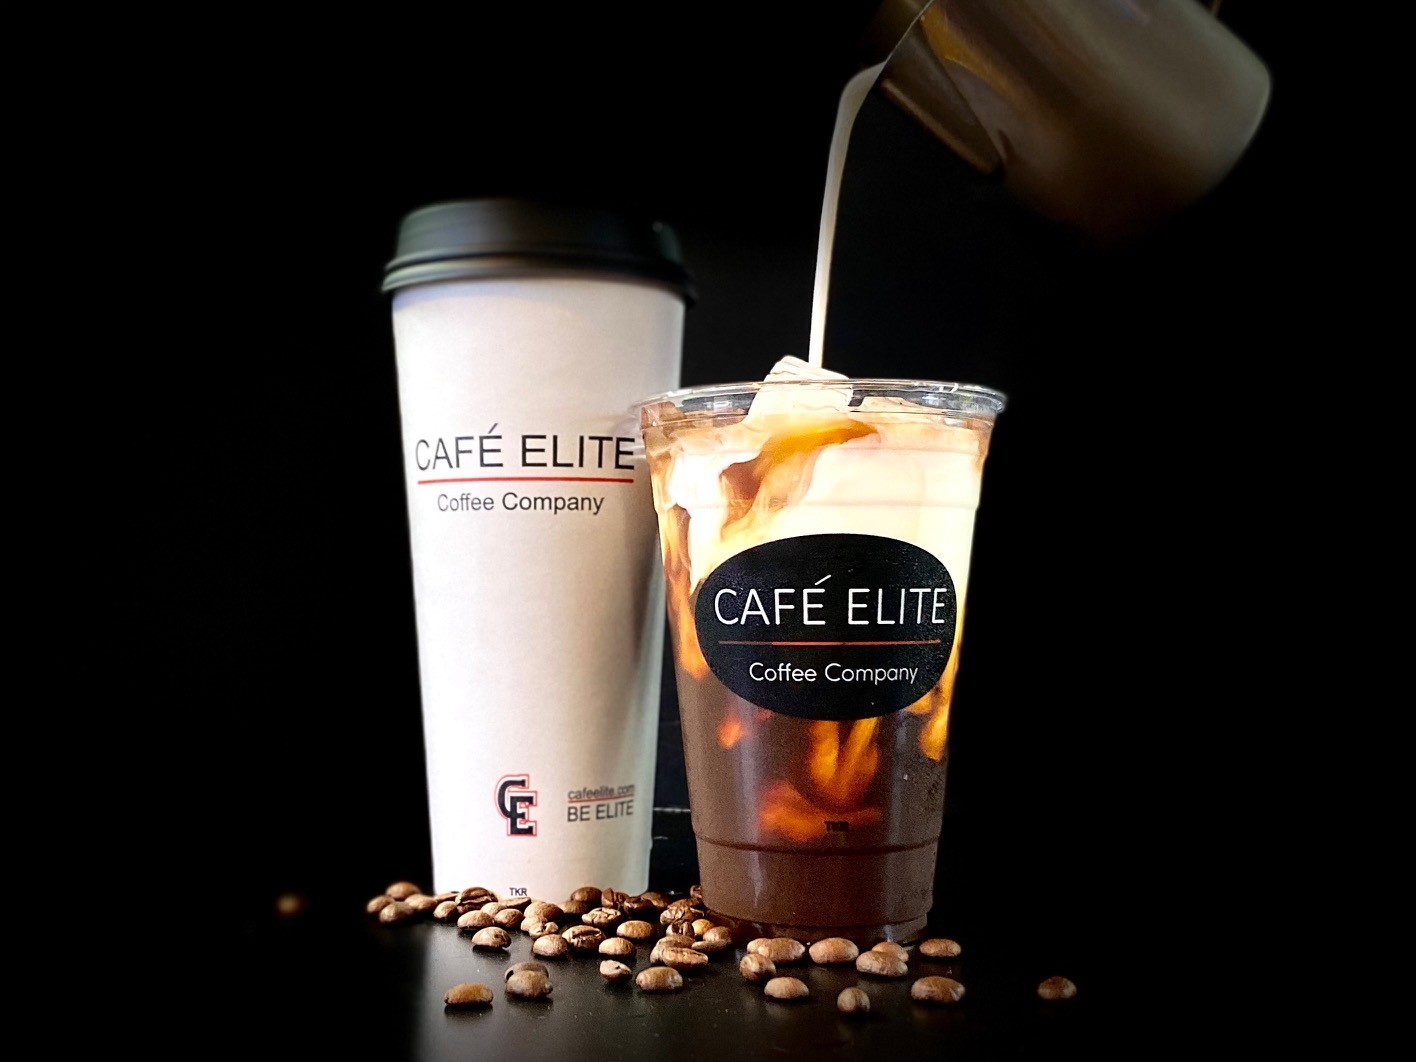 Cafe Elite